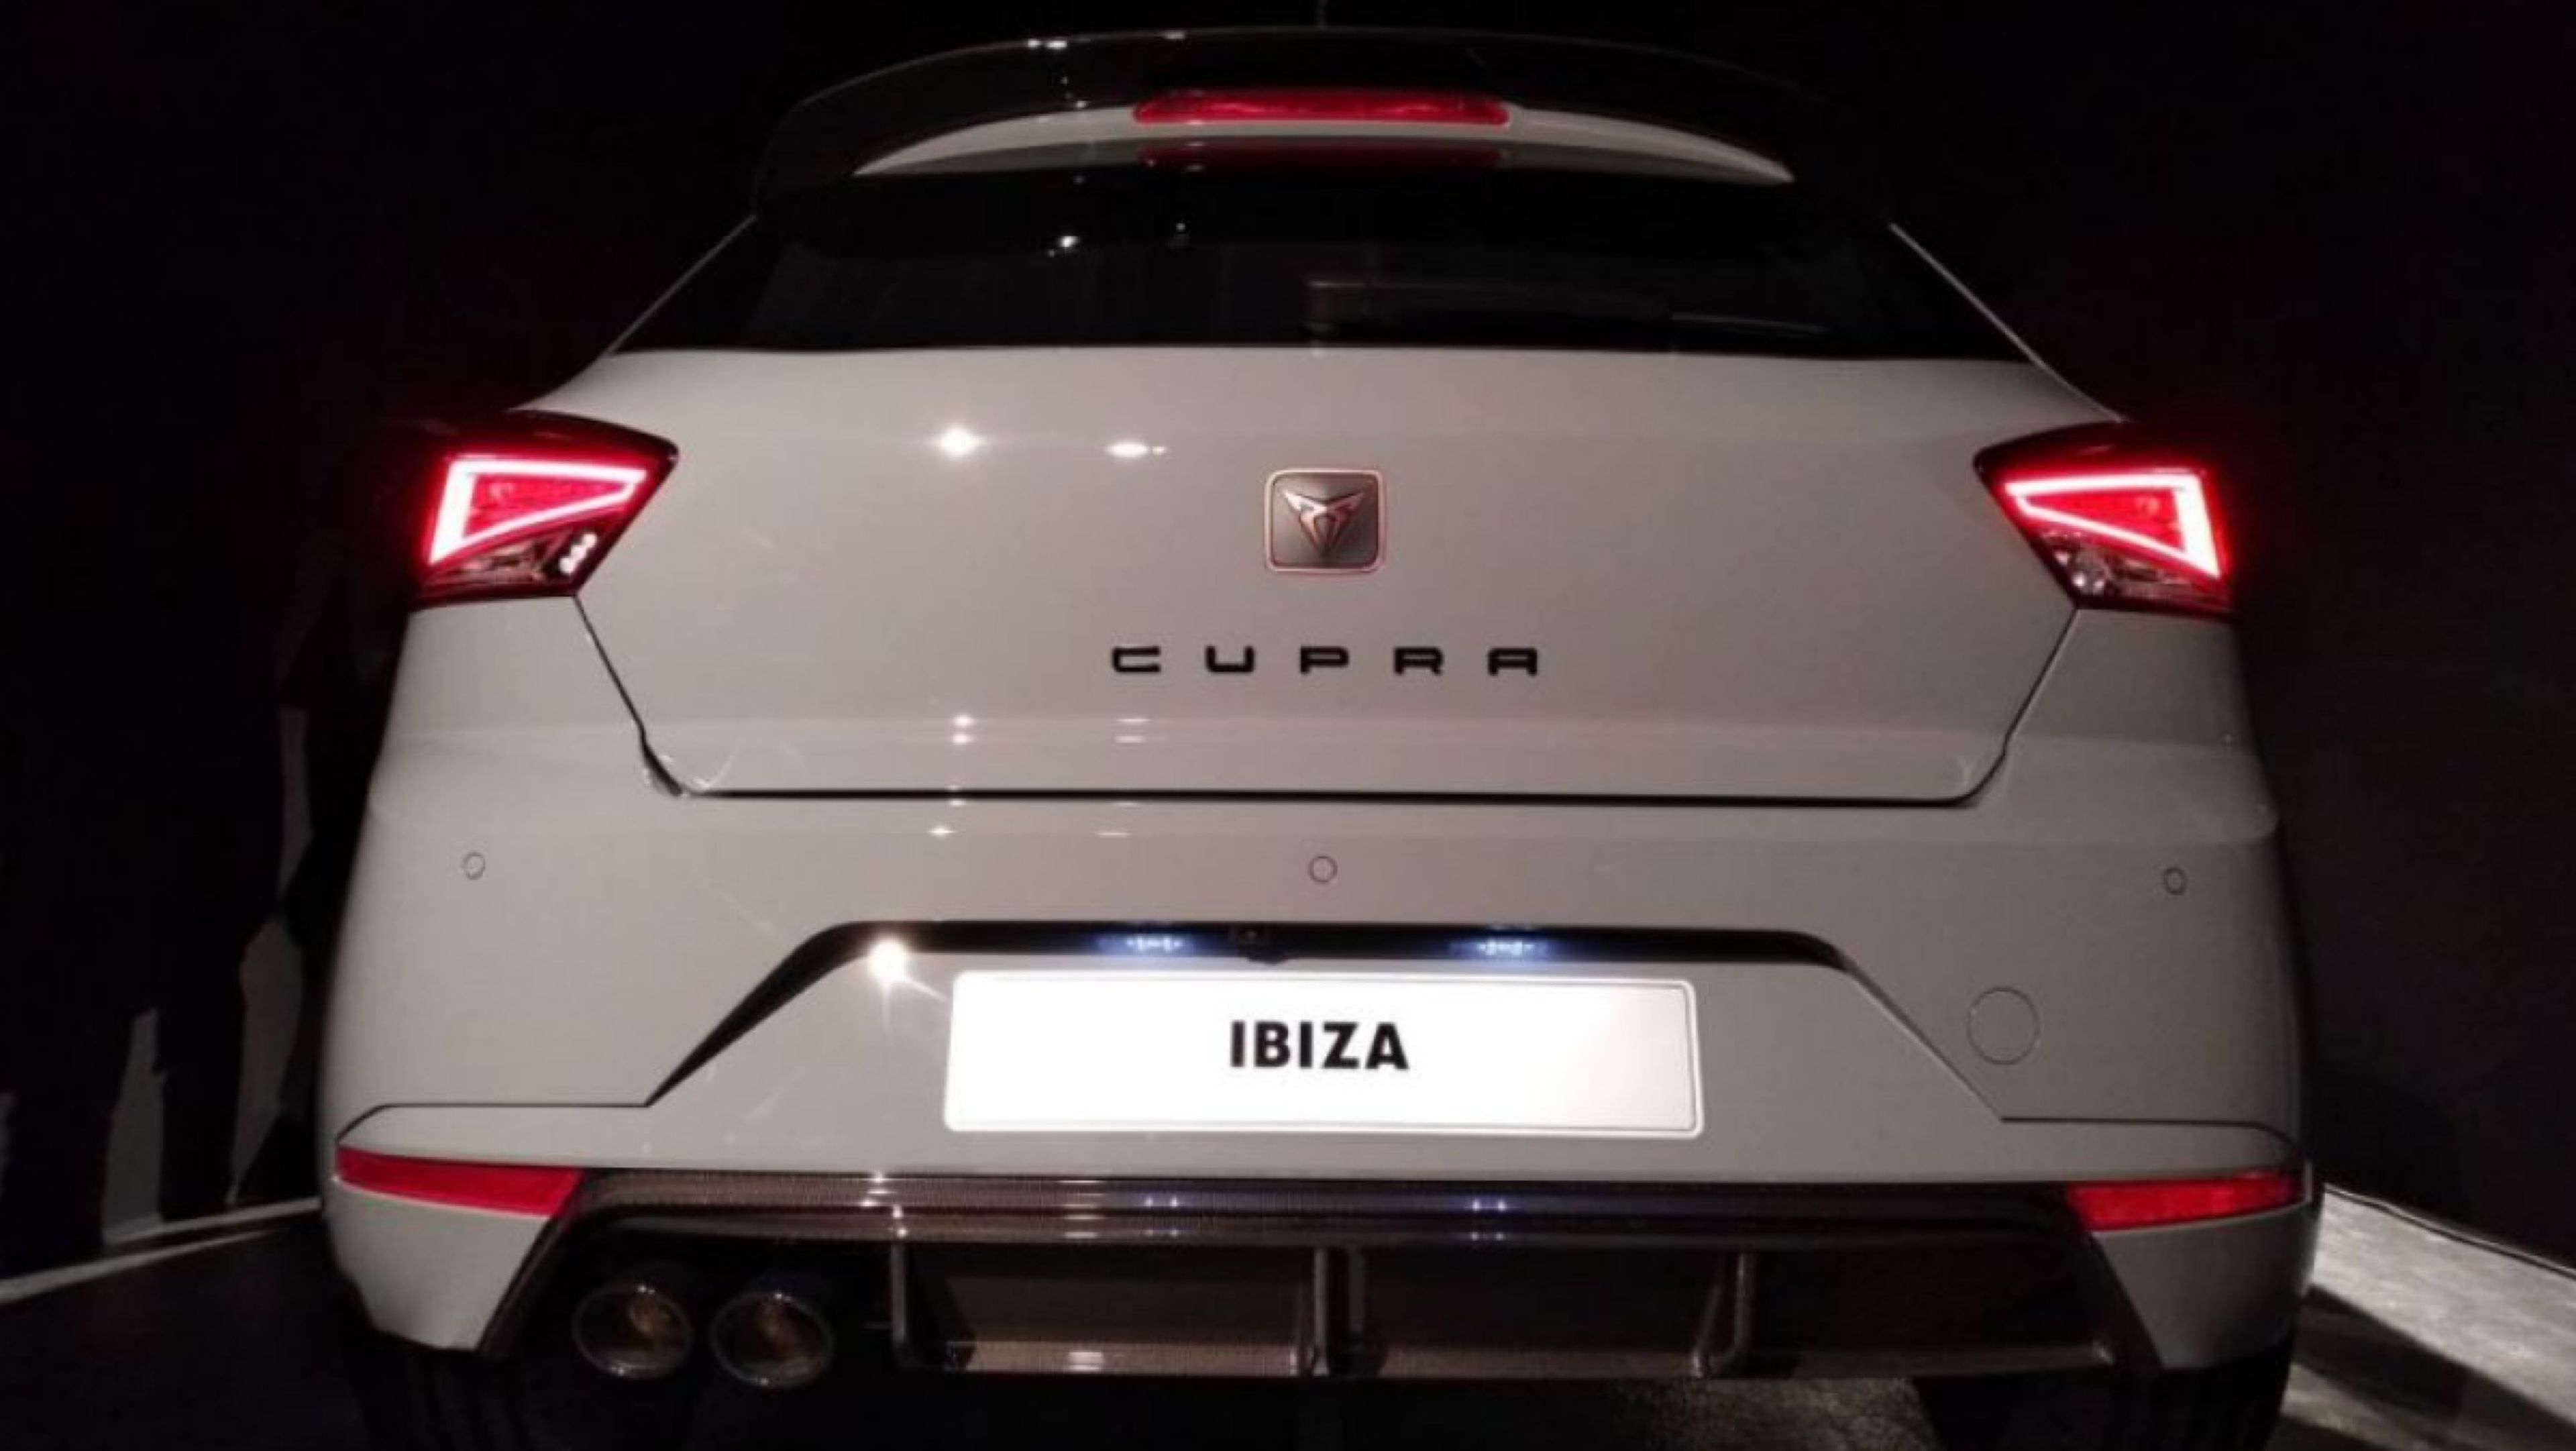 Cupra Ibiza